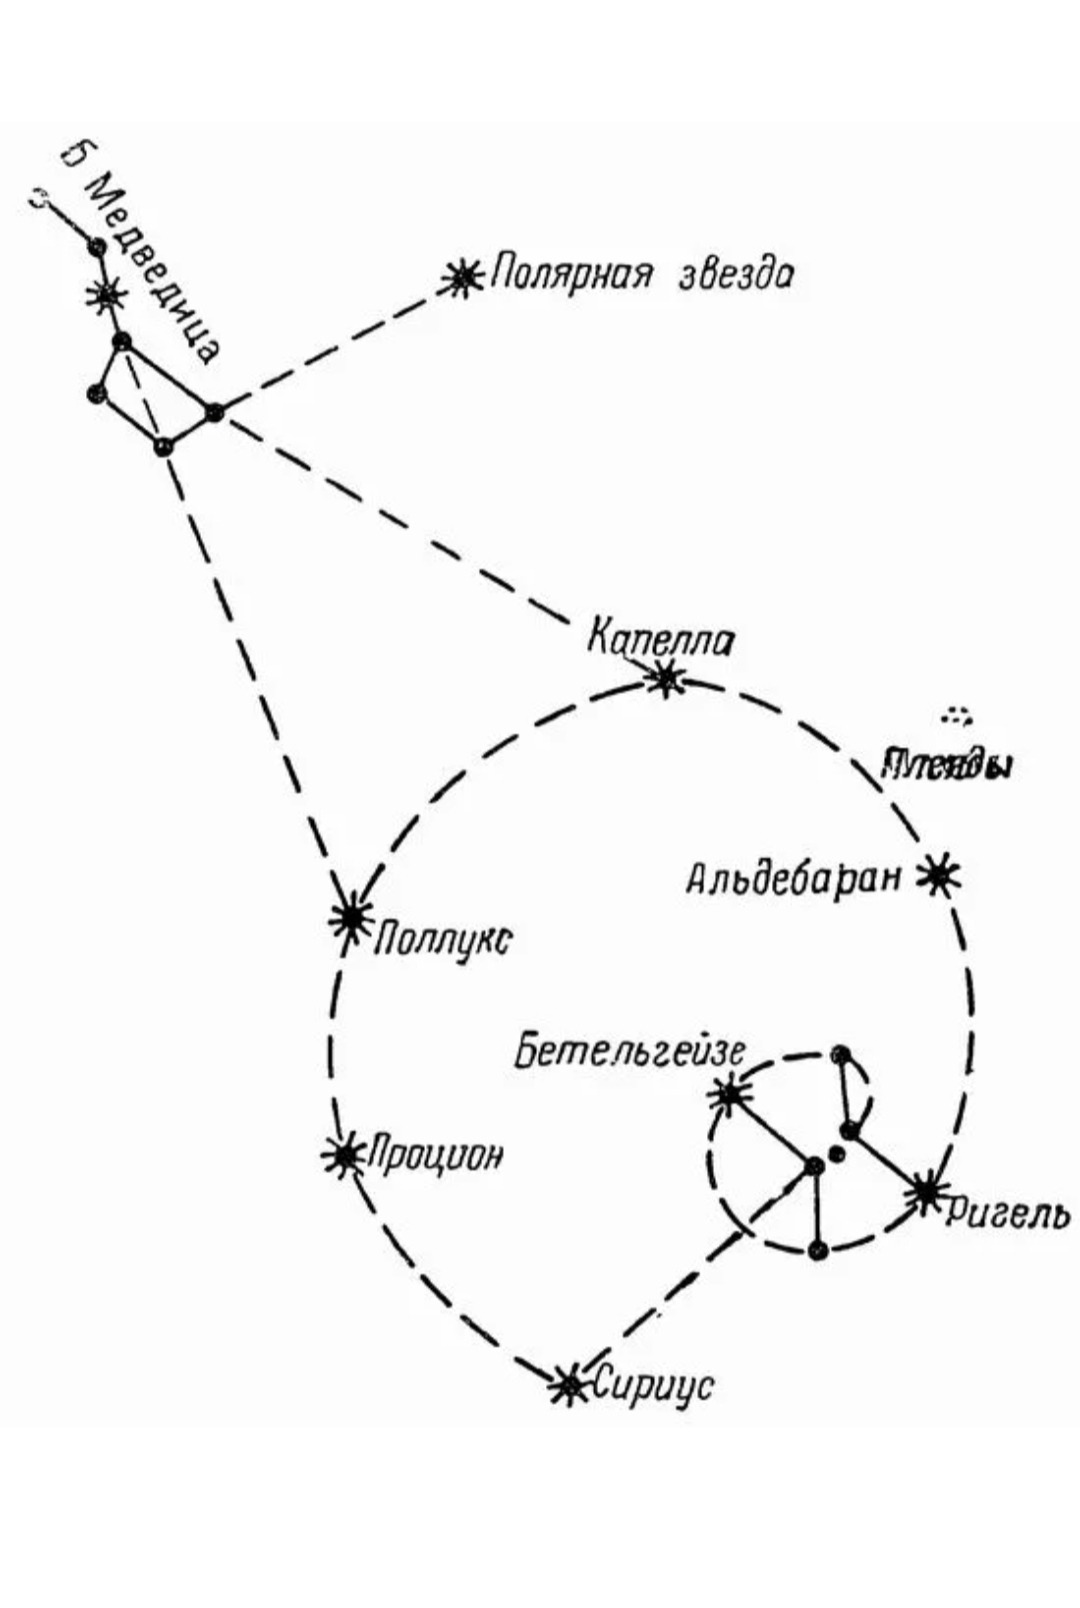 Сириус и Полярная звезда на карте звездного неба